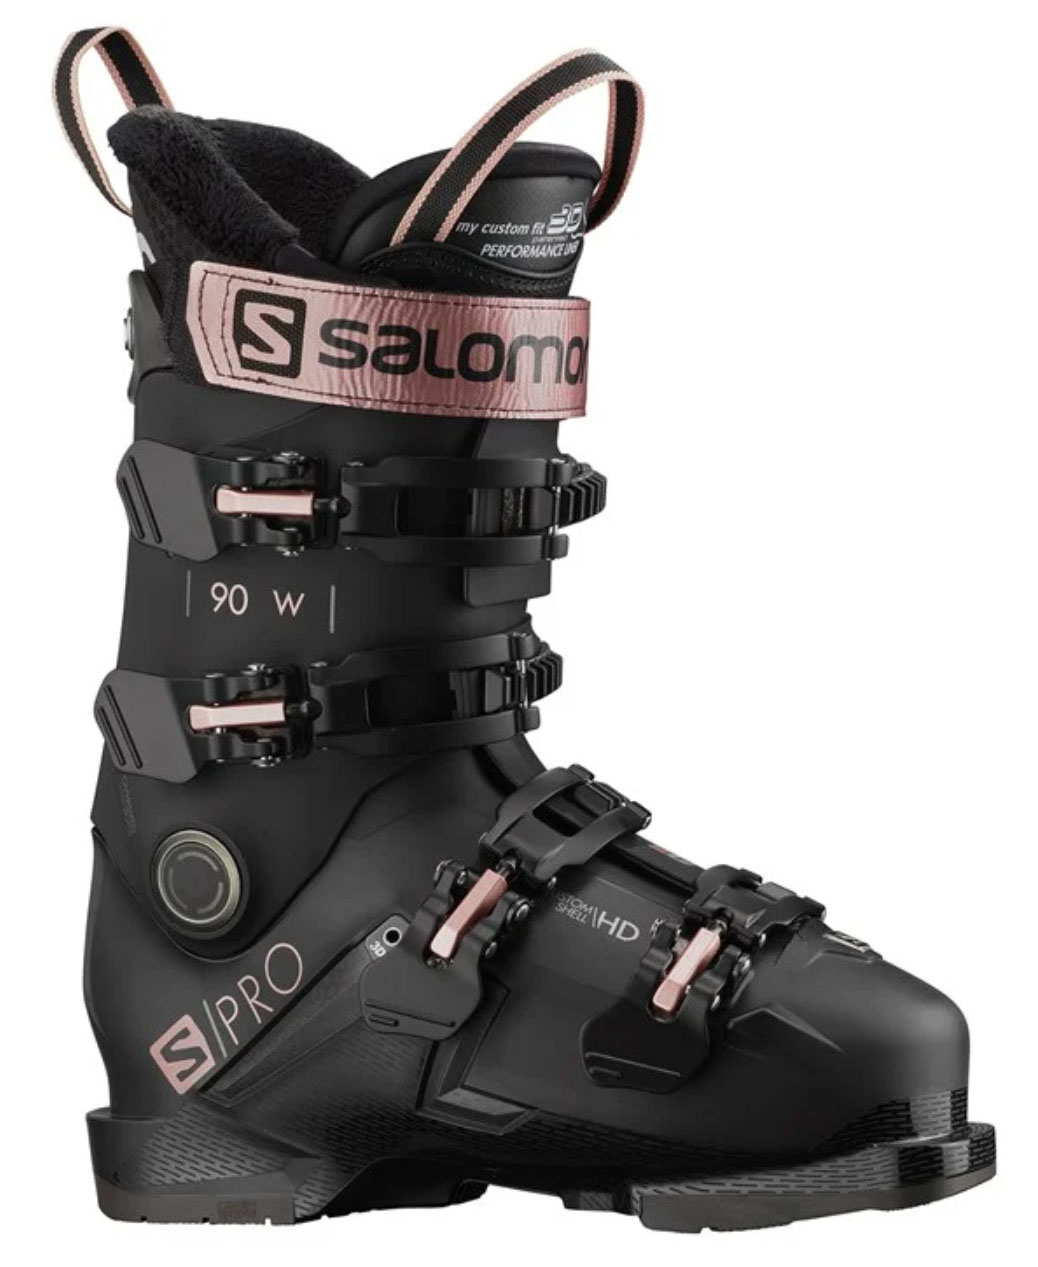 Salomon S Pro 90 W GW women's ski boot_0